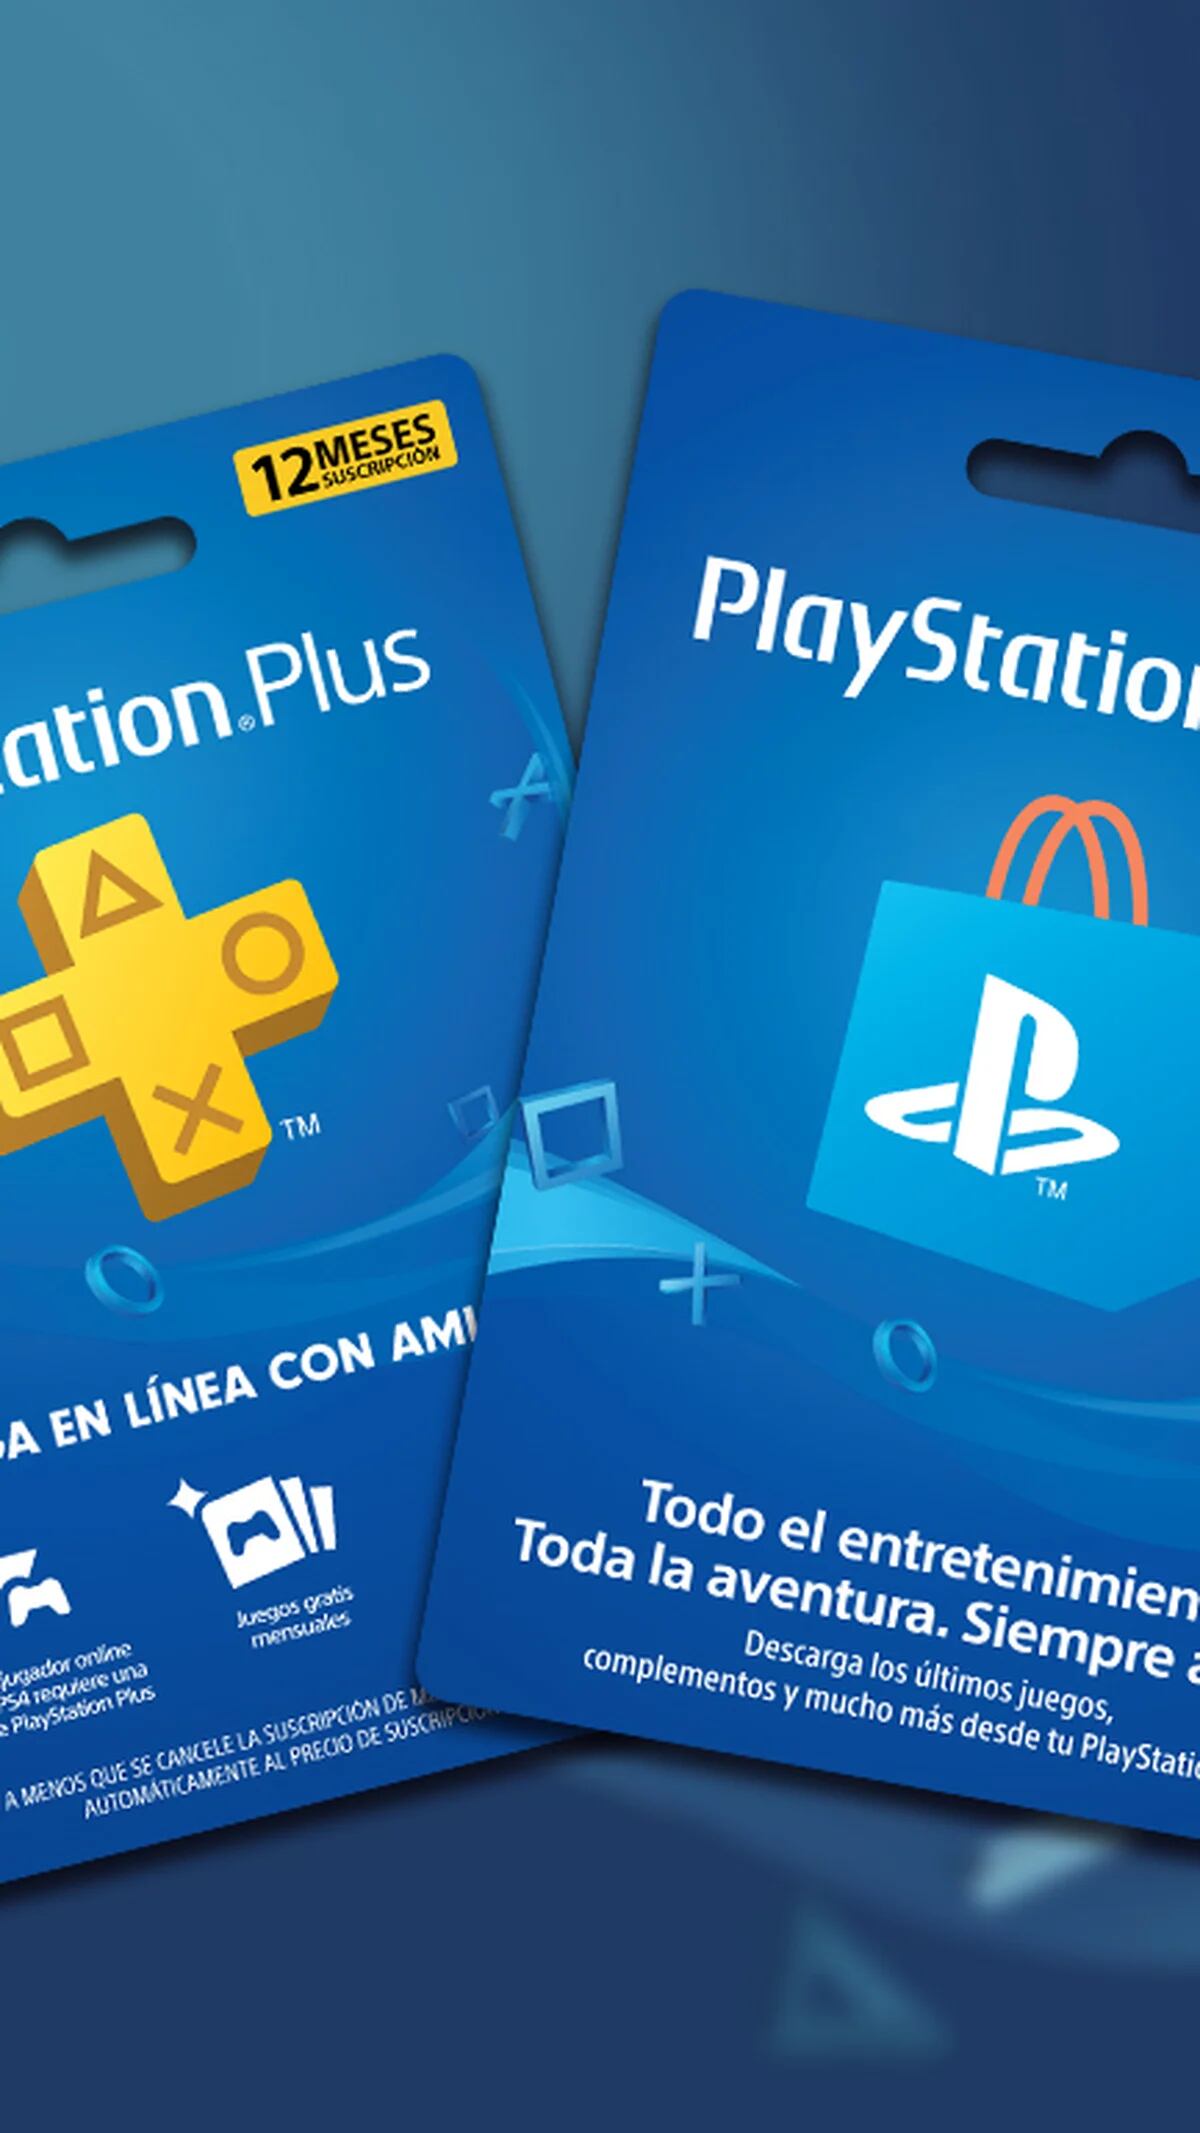 PlayStation comenzó a vender en Argentina tarjetas físicas de